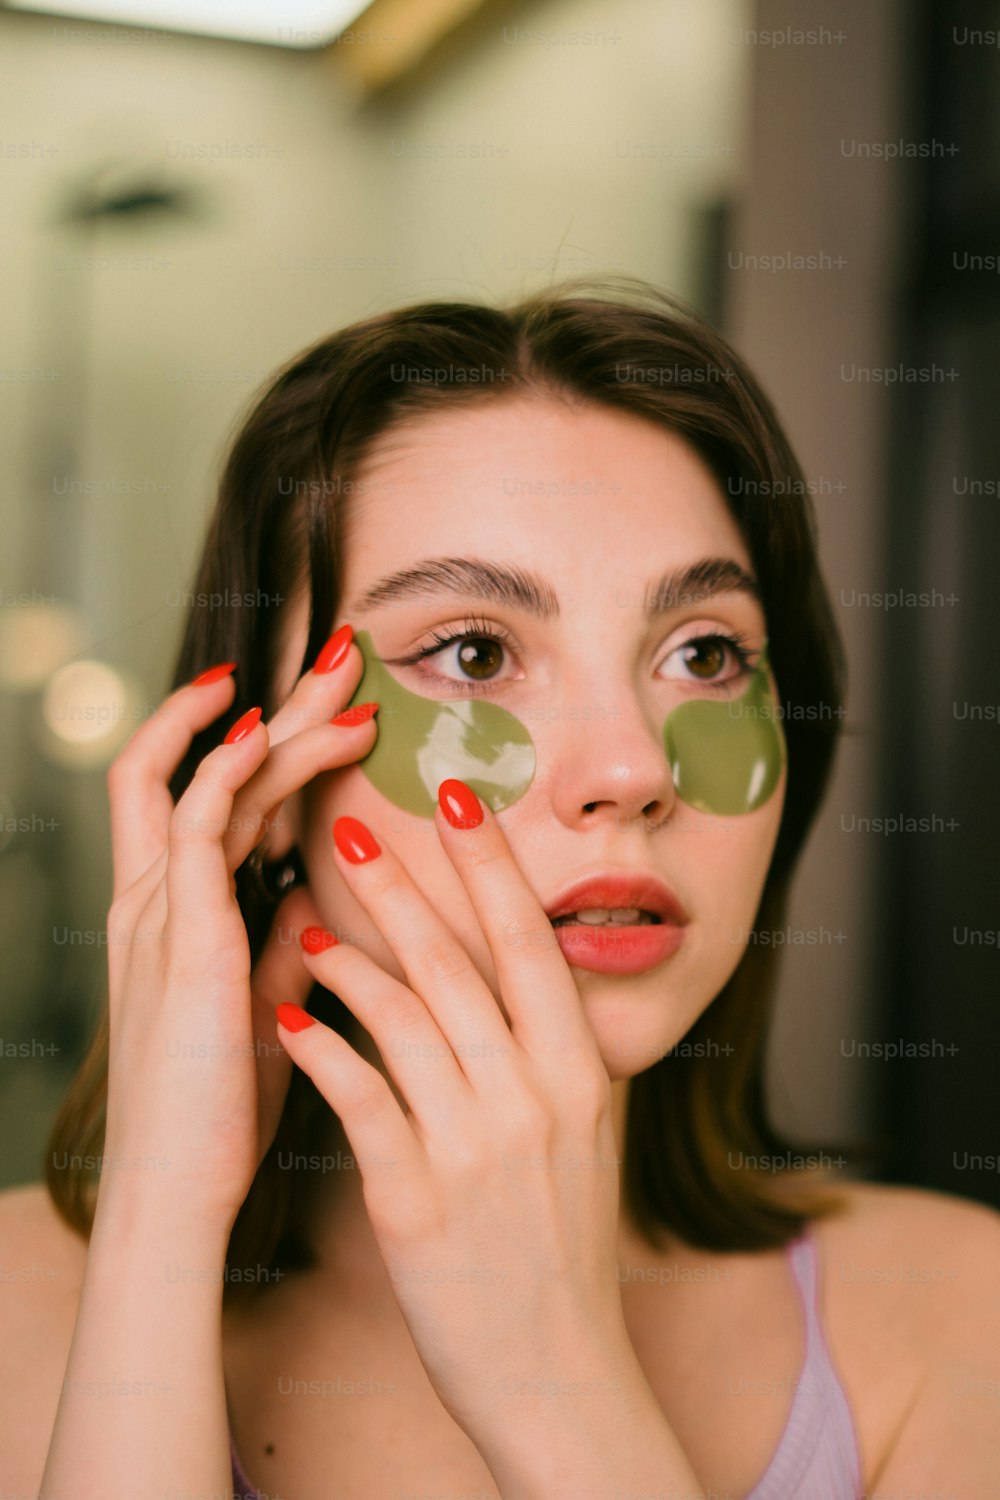 Imágenes De Mascara Para Los Ojos Descarga Imágenes Gratuitas En Unsplash 